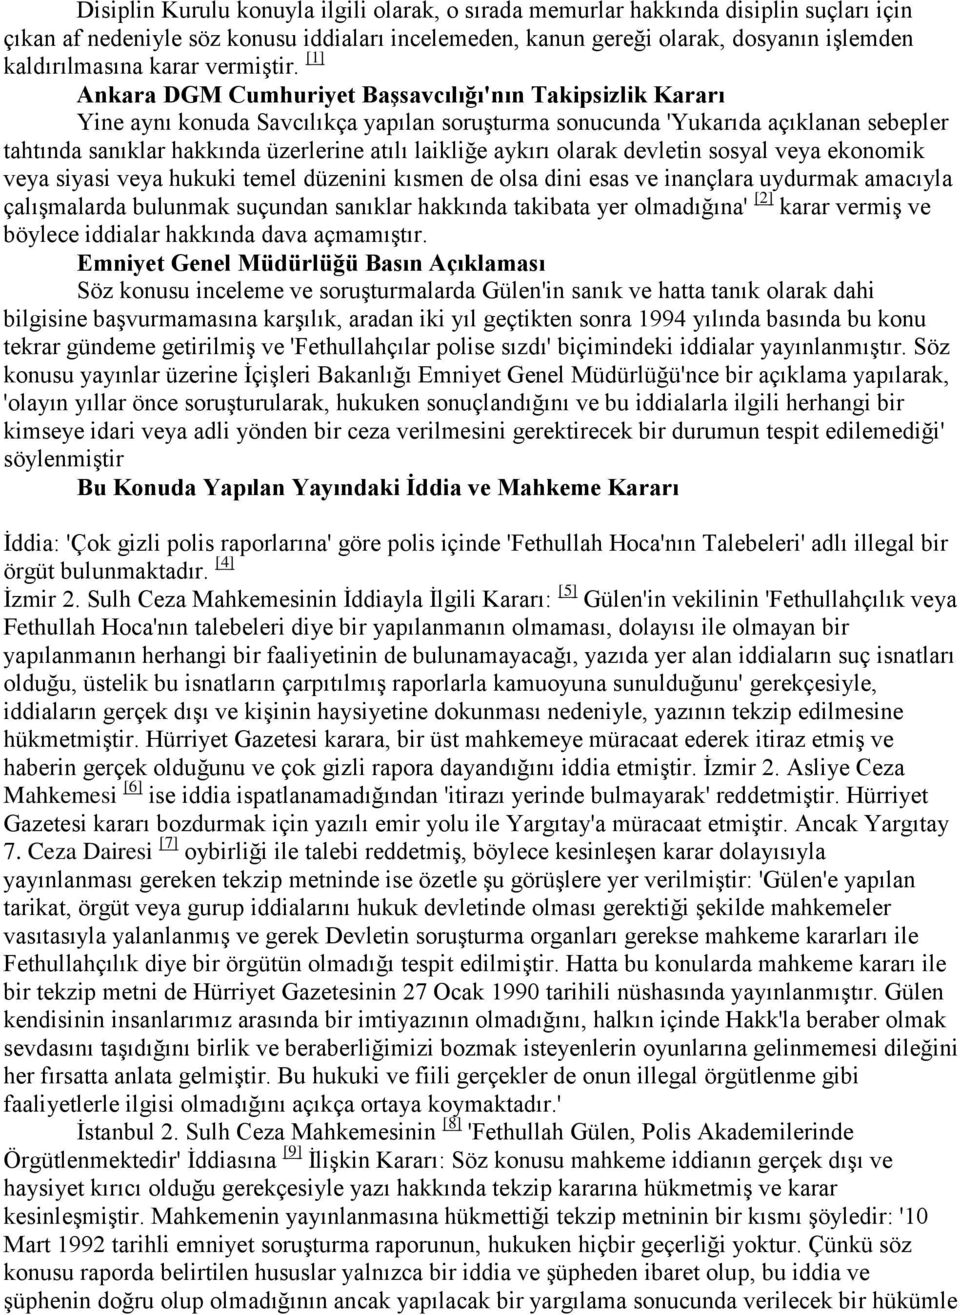 [1] Ankara DGM Cumhuriyet Başsavcılığı'nın Takipsizlik Kararı Yine aynı konuda Savcılıkça yapılan soruşturma sonucunda 'Yukarıda açıklanan sebepler tahtında sanıklar hakkında üzerlerine atılı